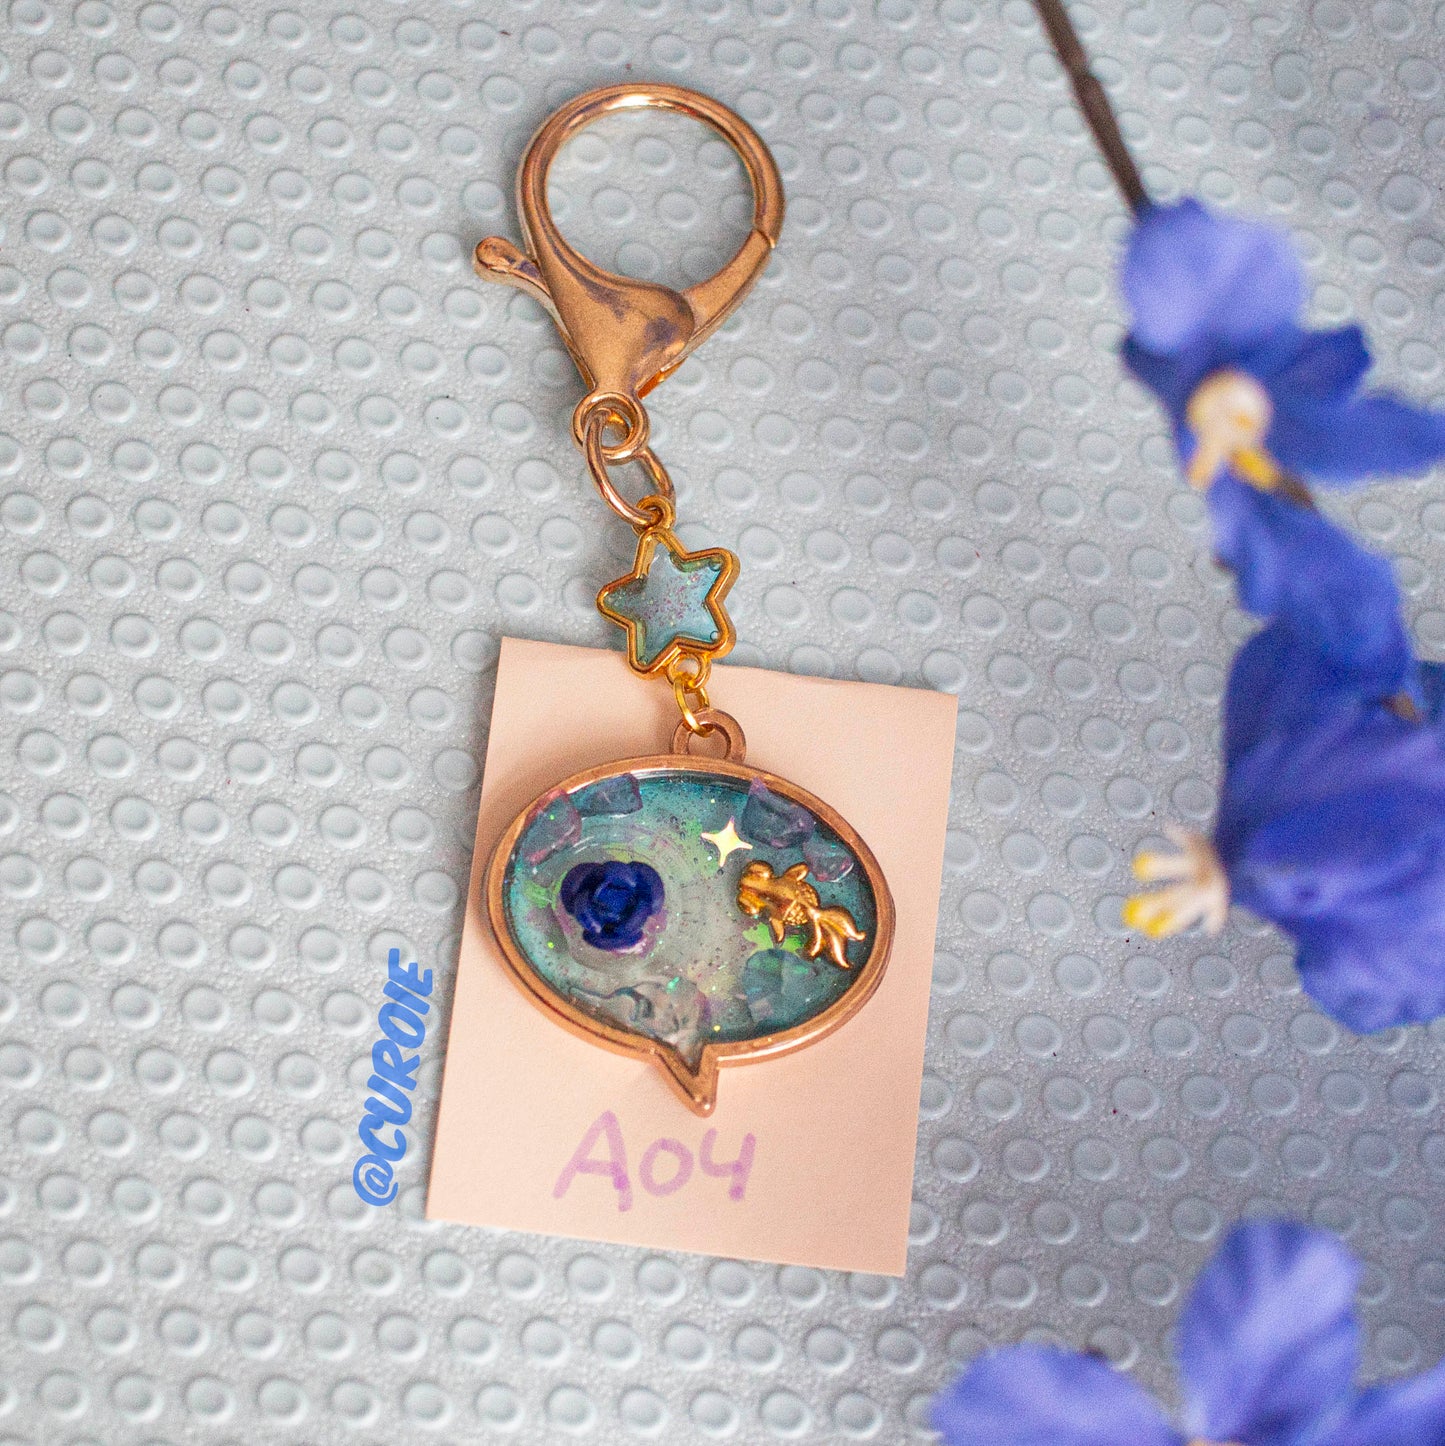 Resin Handmade Keychain: A04